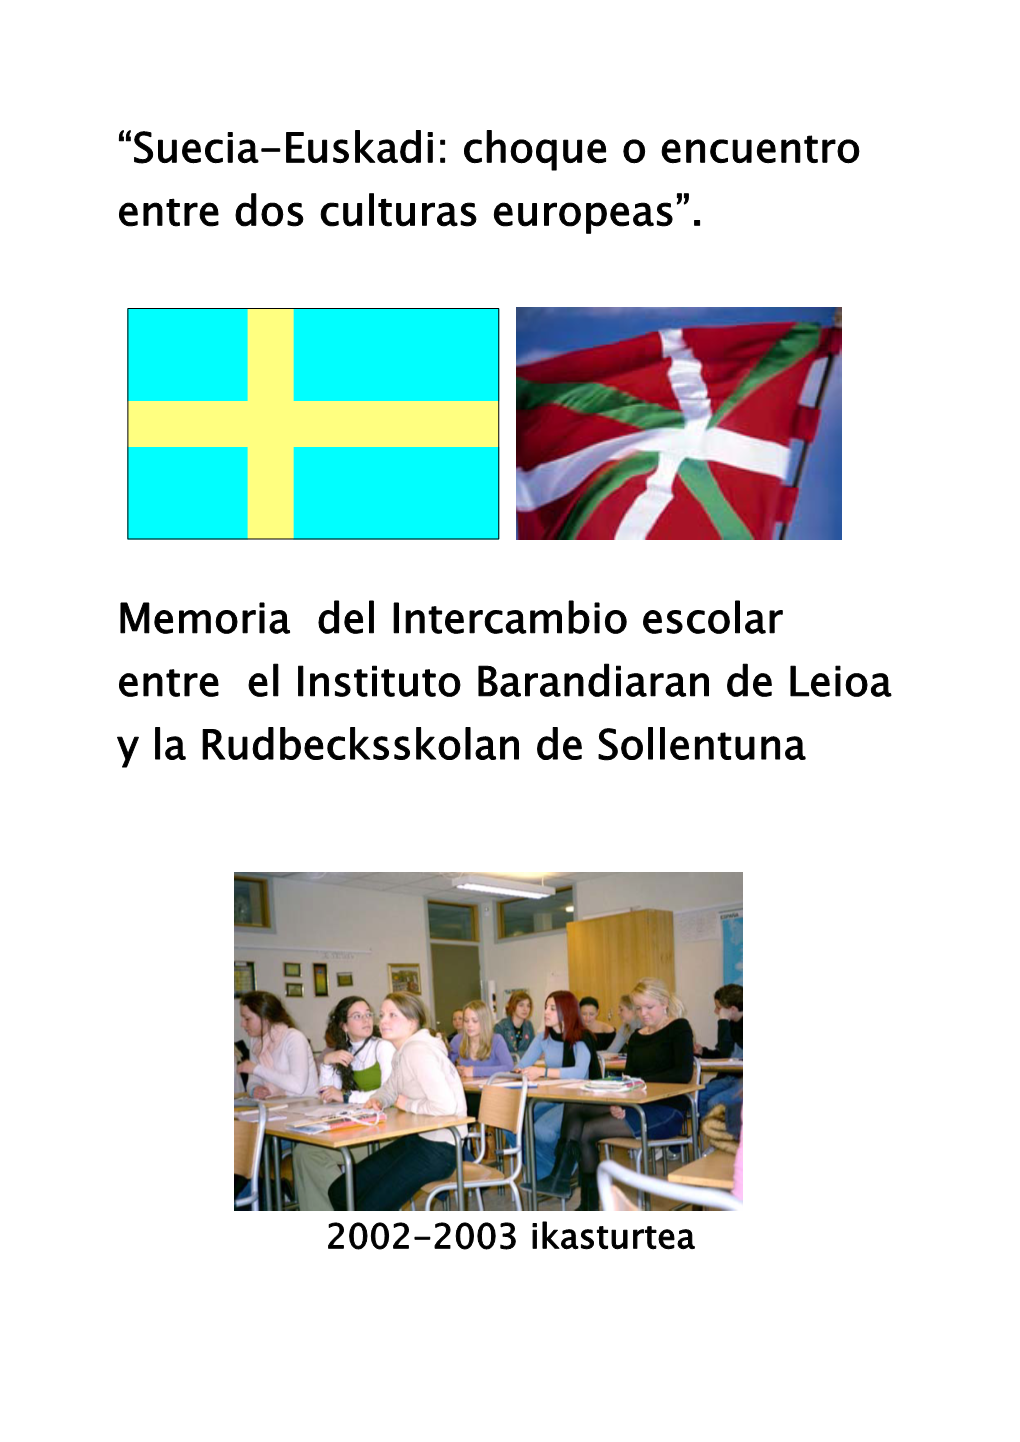 “Suecia-Euskadi: Choque O Encuentro Entre Dos Culturas Europeas”